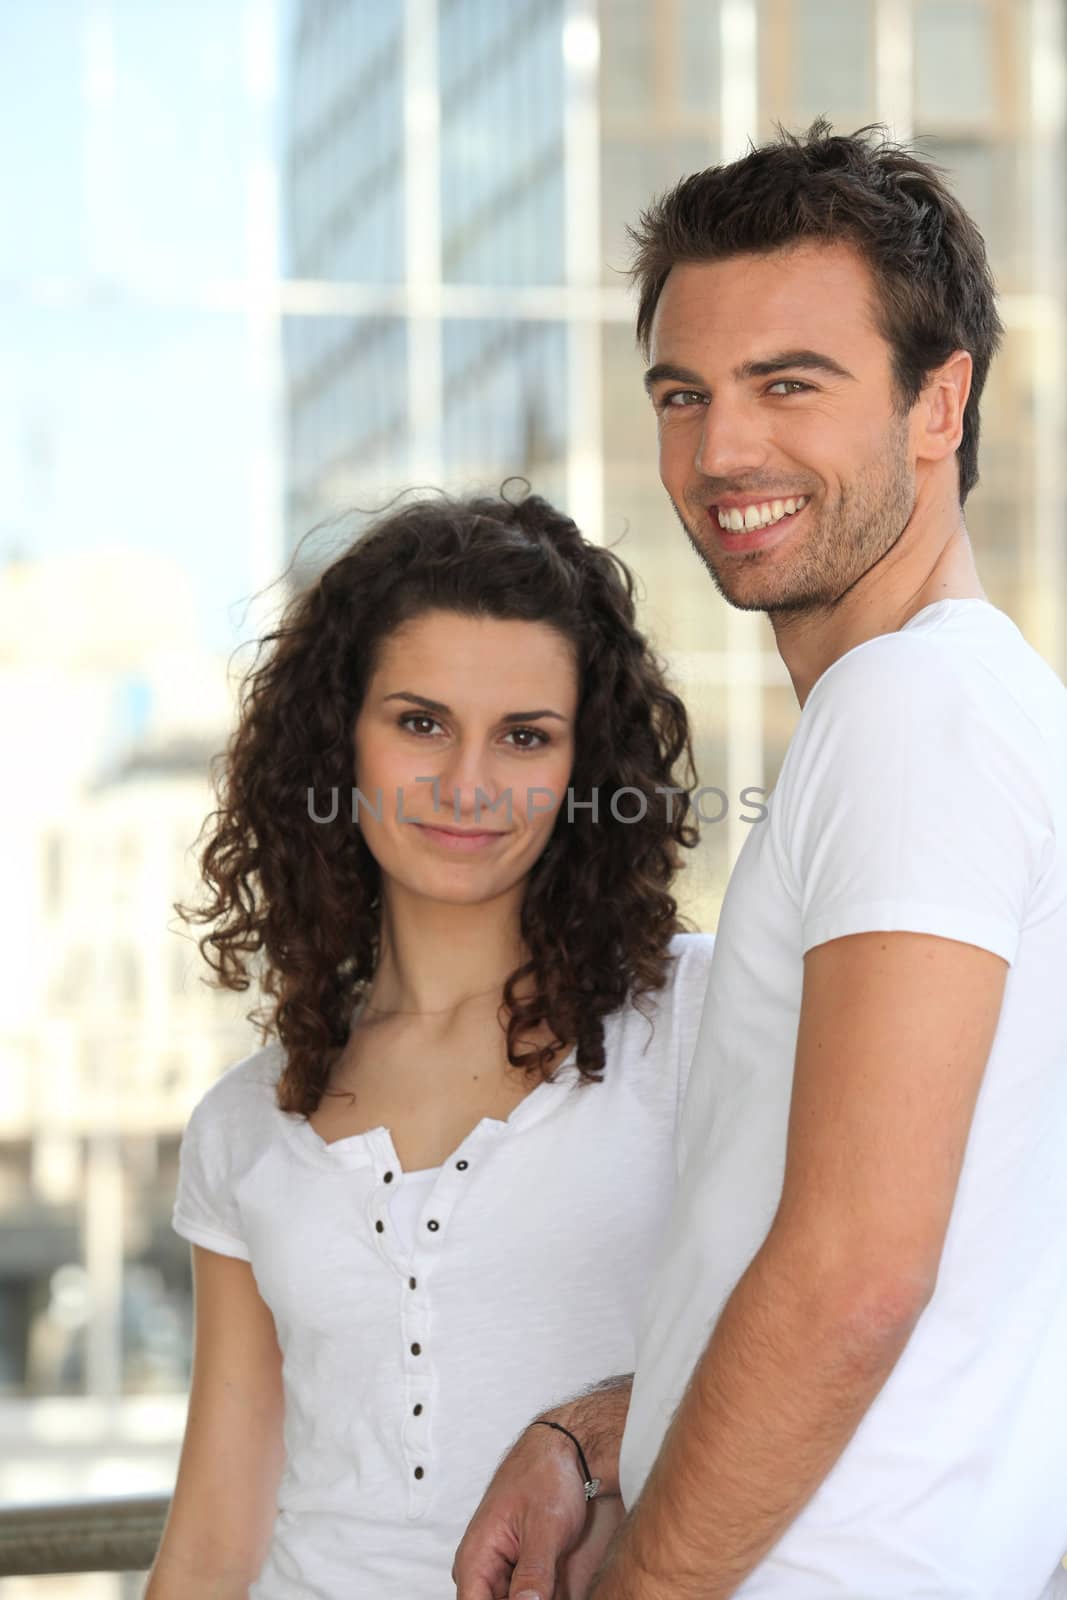 Portrait of a happy couple